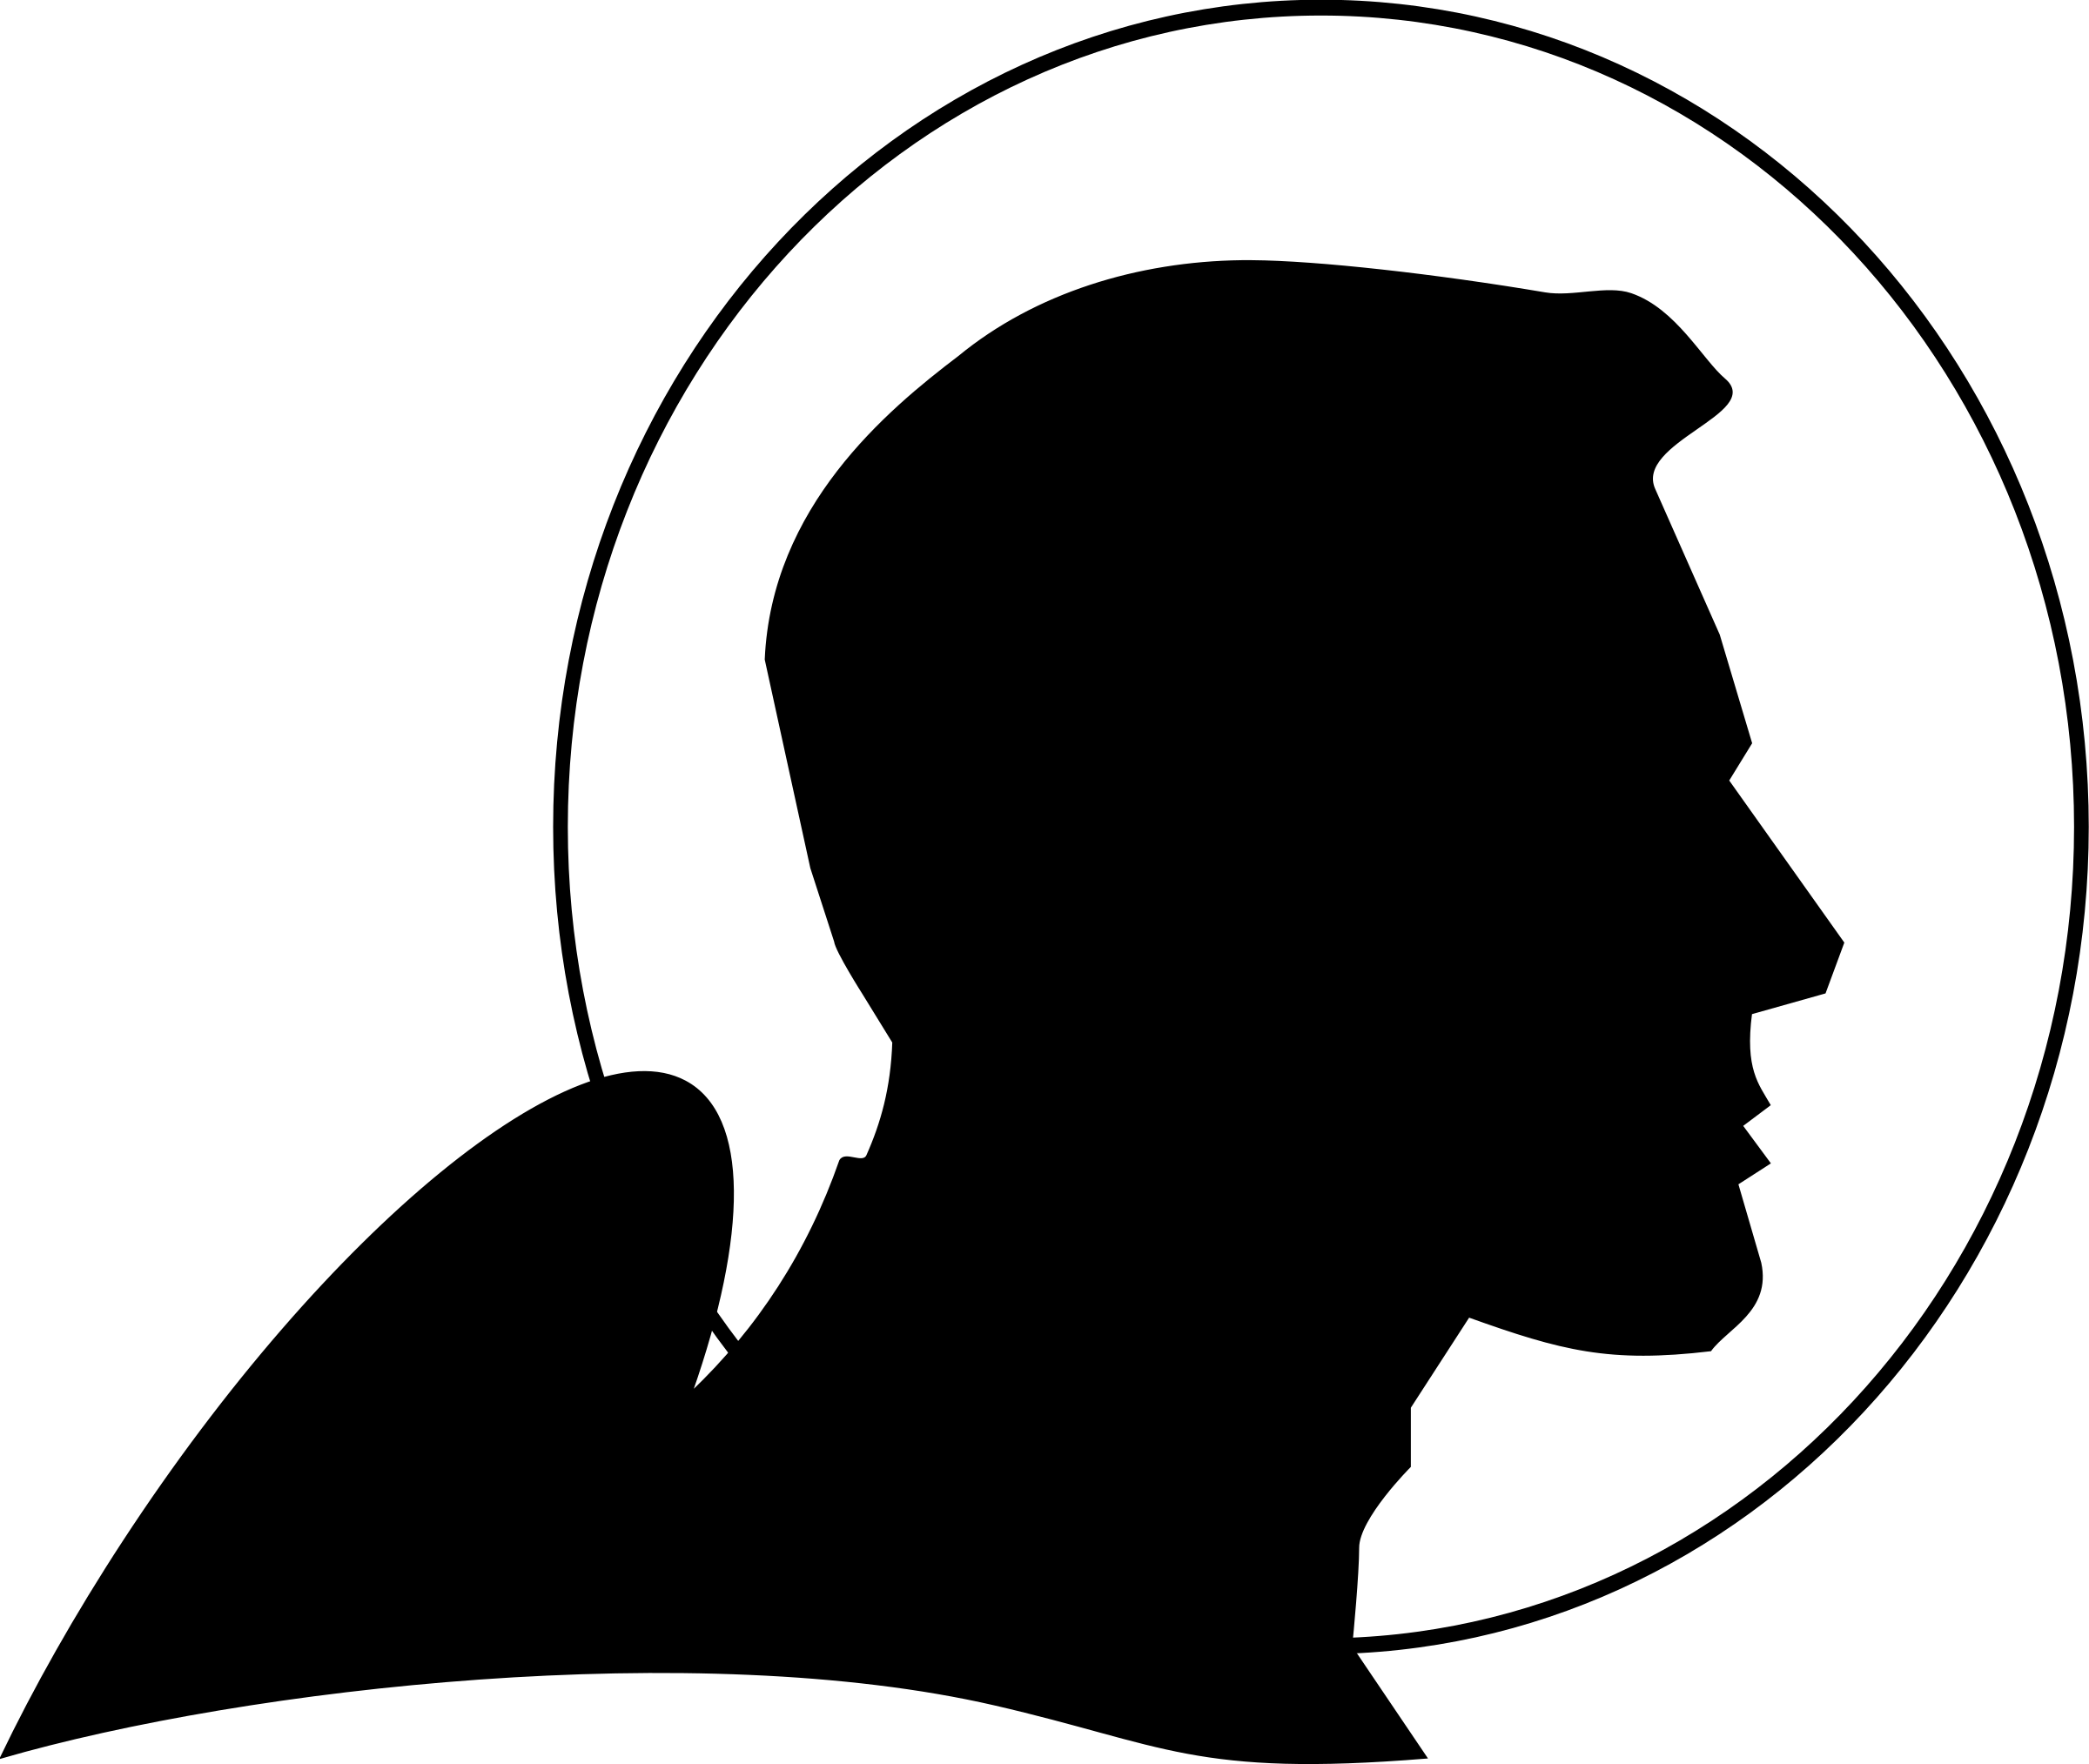 VIntage Astronaut Spaceman Silhouette Profile SVG Clip arts